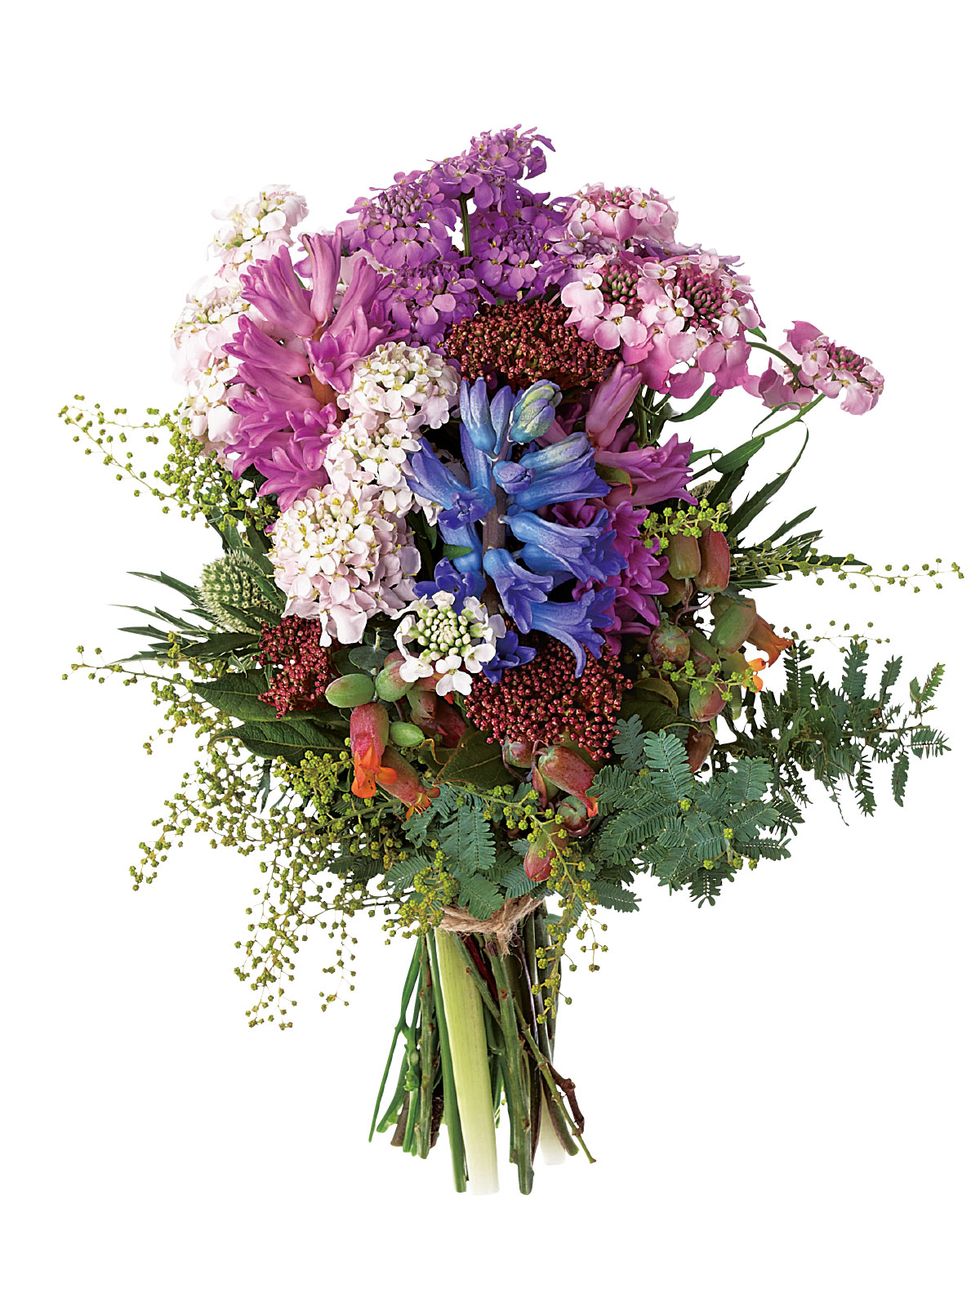 Bouquet, Flower, Purple, Cut flowers, Petal, Floristry, Flower Arranging, Botany, Violet, Floral design, 